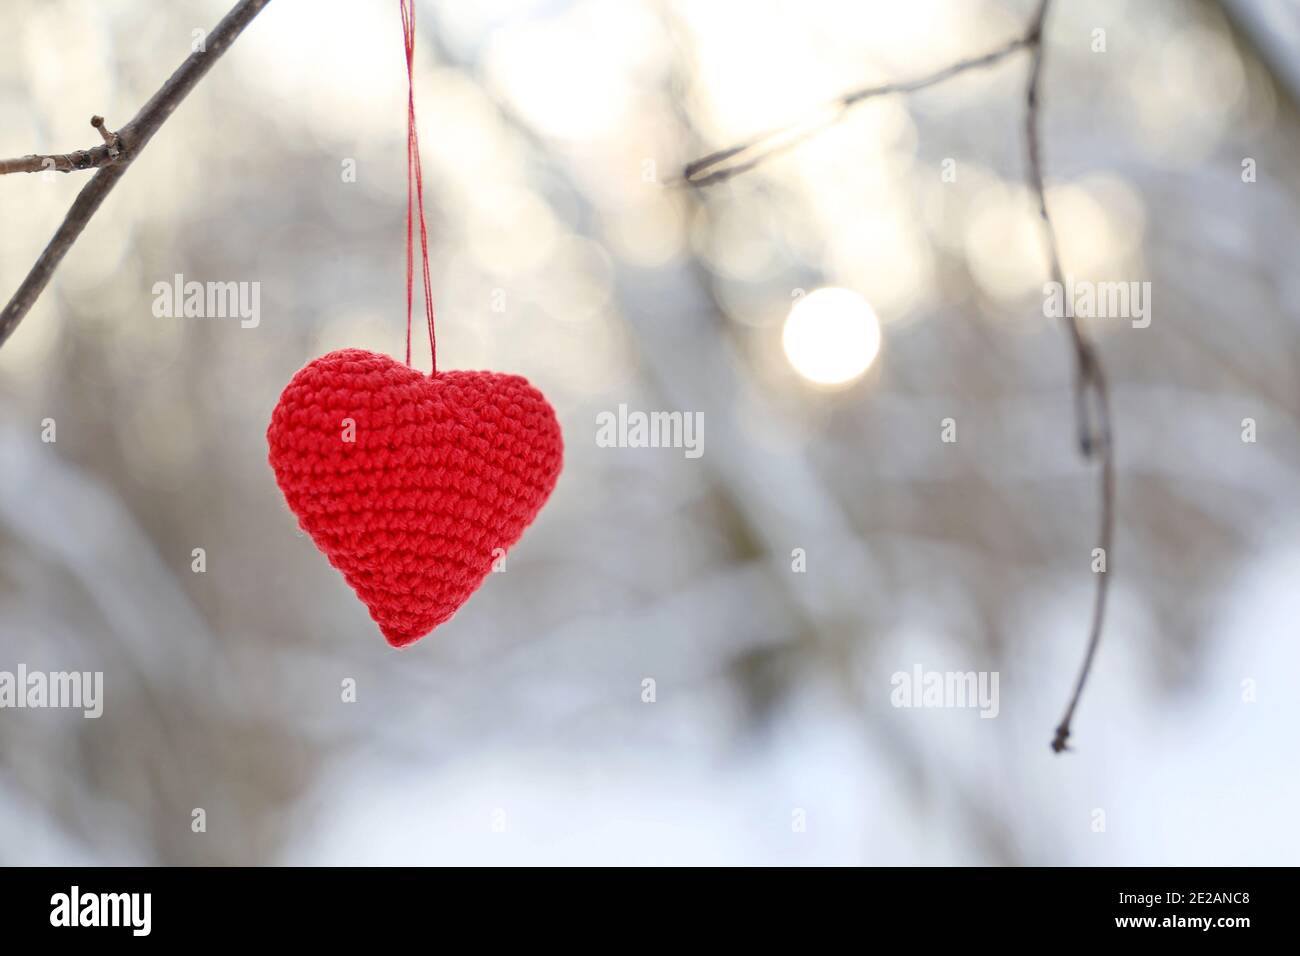 Coeur de la Saint-Valentin dans la forêt d'hiver contre le soleil. Coeur tricoté rouge accroché à une branche, symbole de l'amour romantique, fond pour des vacances de neige Banque D'Images